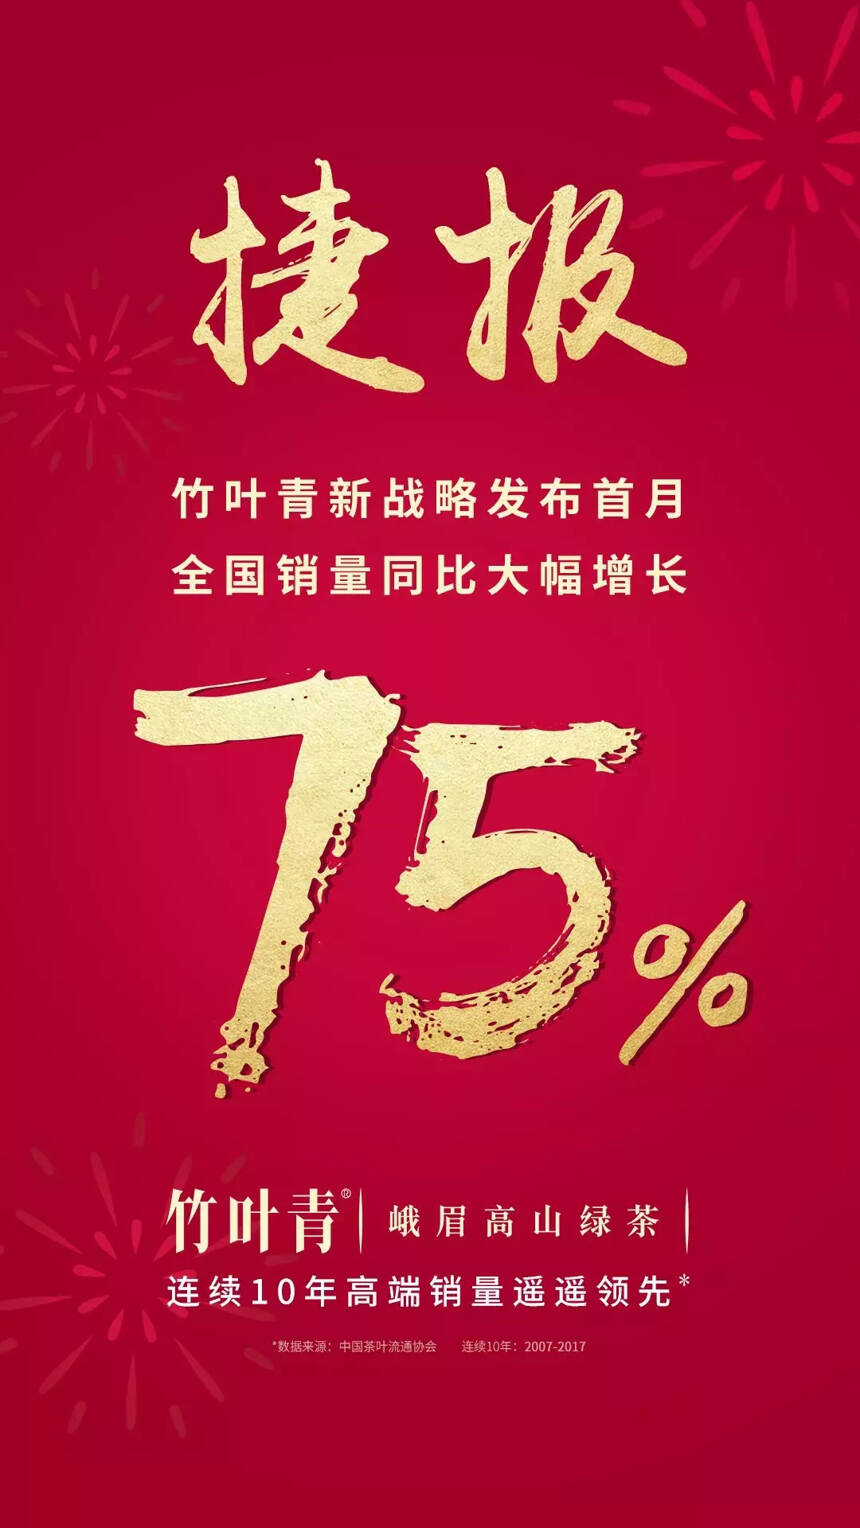 同比大增75%，竹叶青新战略发布首月赢得更多中国人的青睐